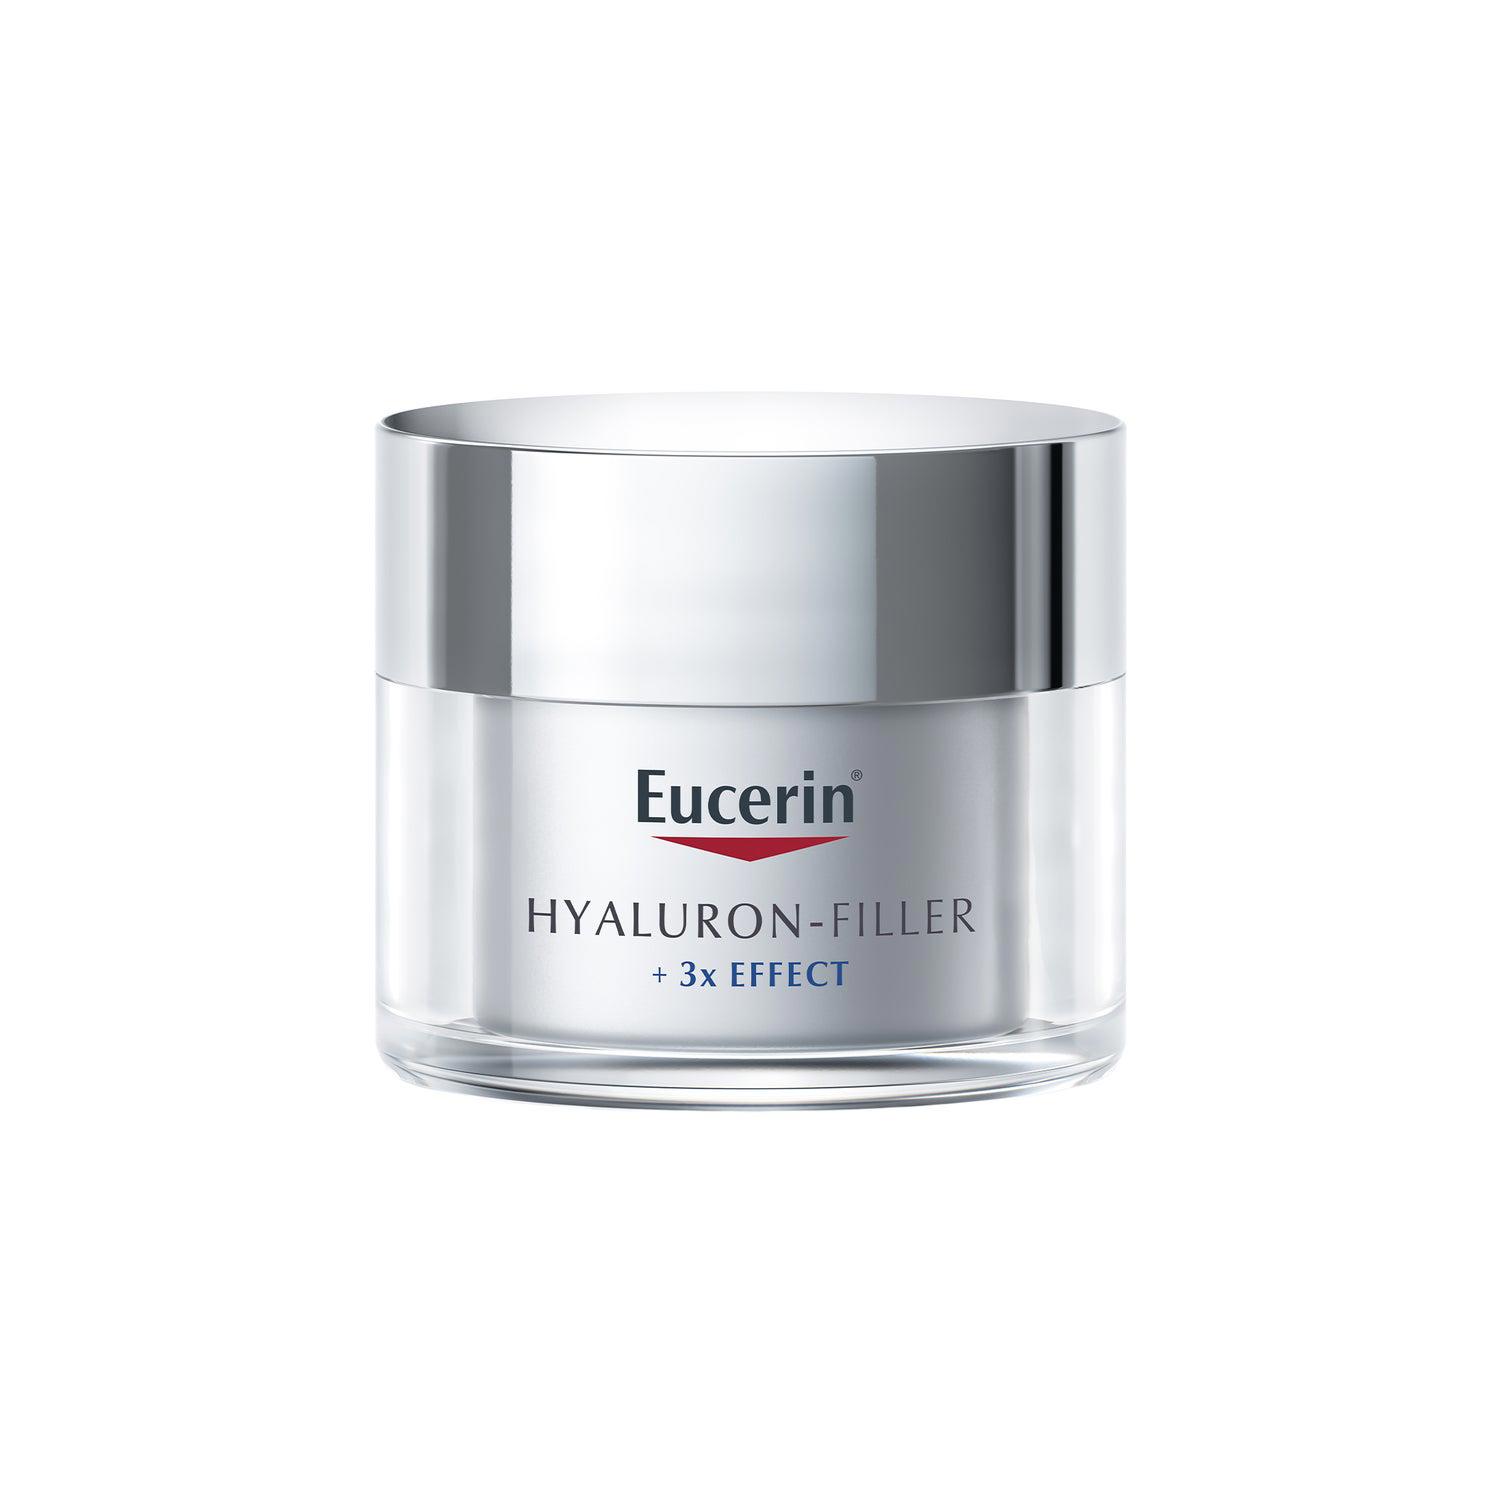 Hyaluron-Filler 3x Effect Crema Día de Eucerin